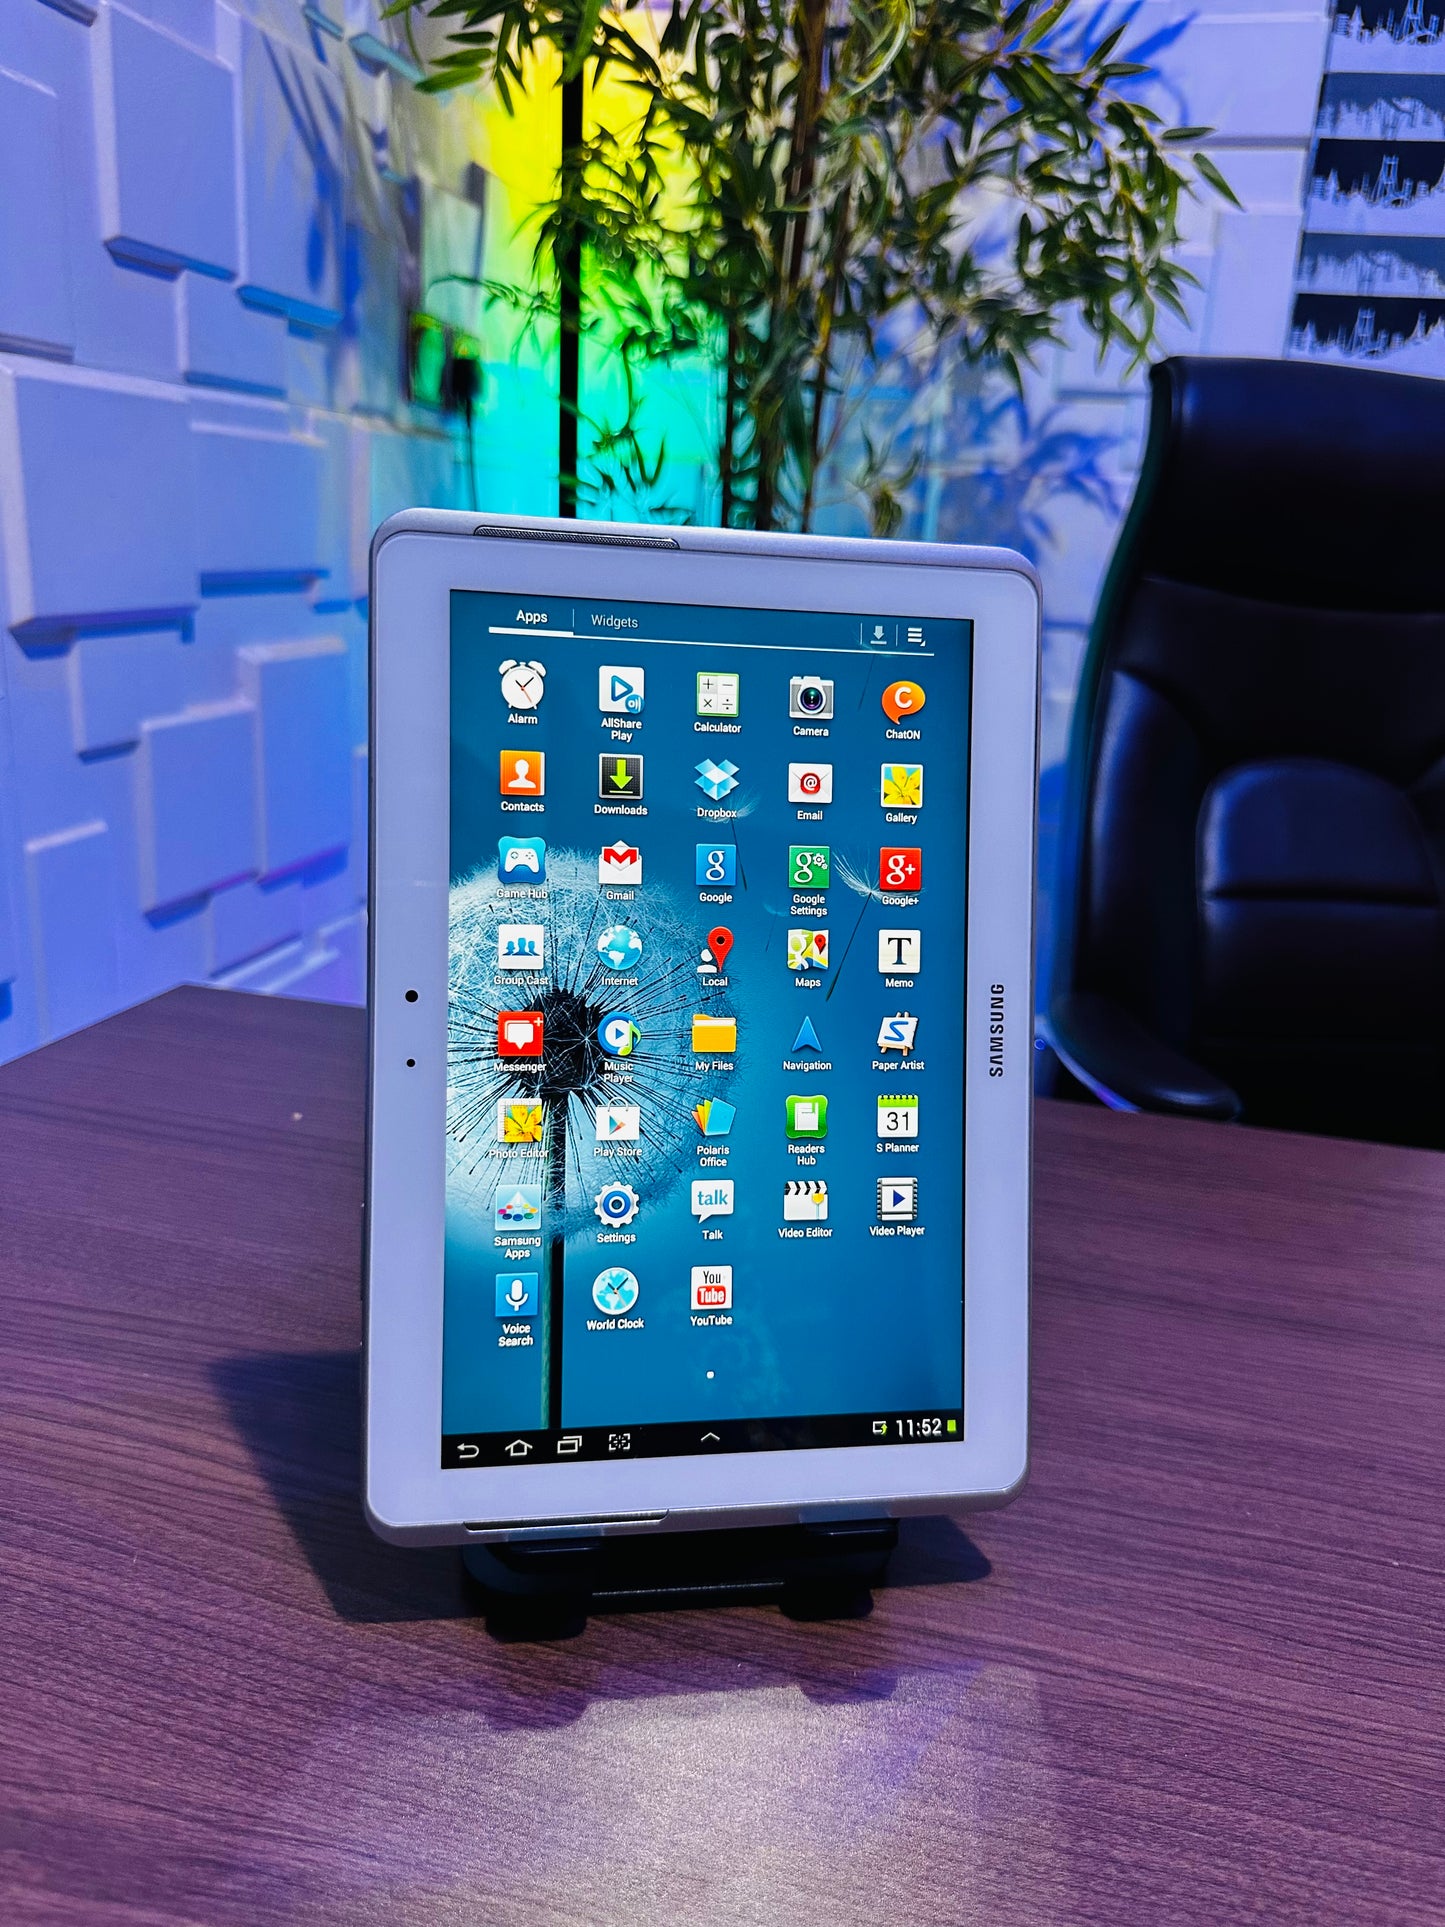 Samsung Galaxy Tab 2 10.1-inch - White